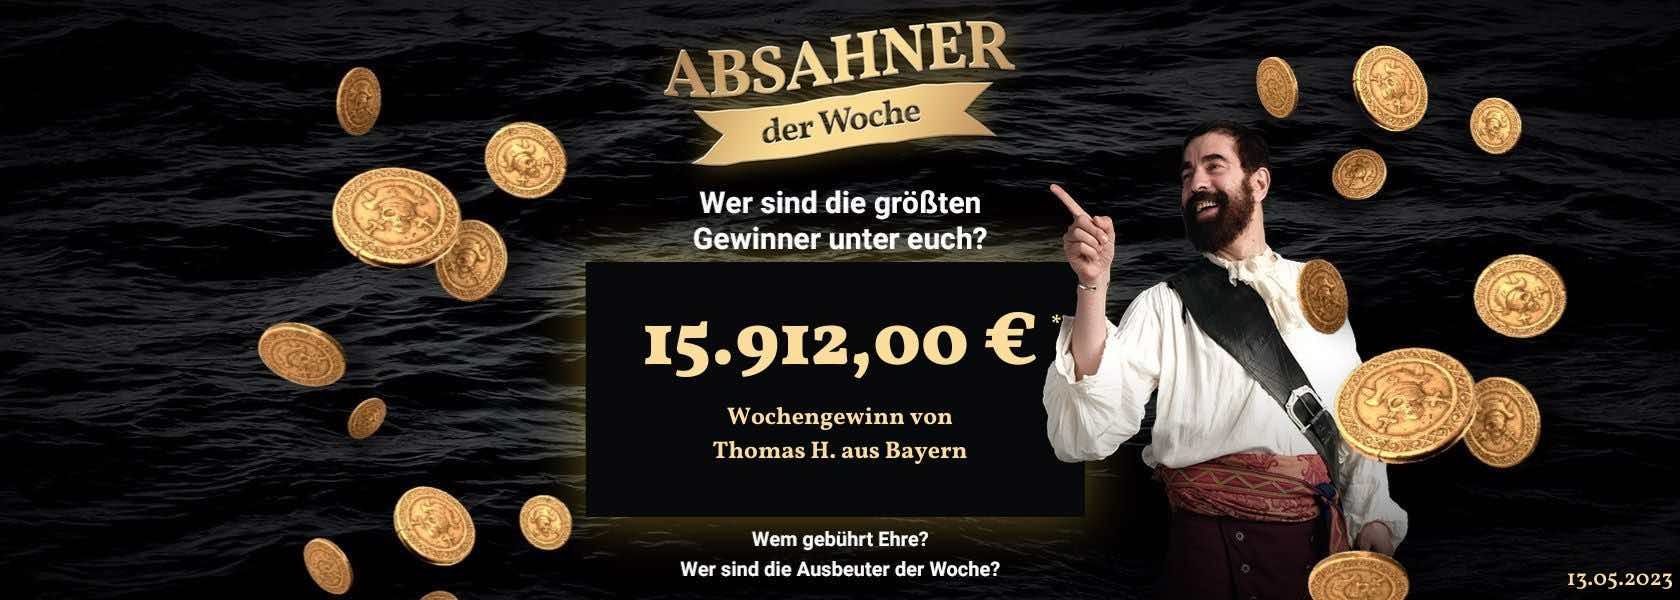 absahner-der-woche-13052023-jackpotpiraten